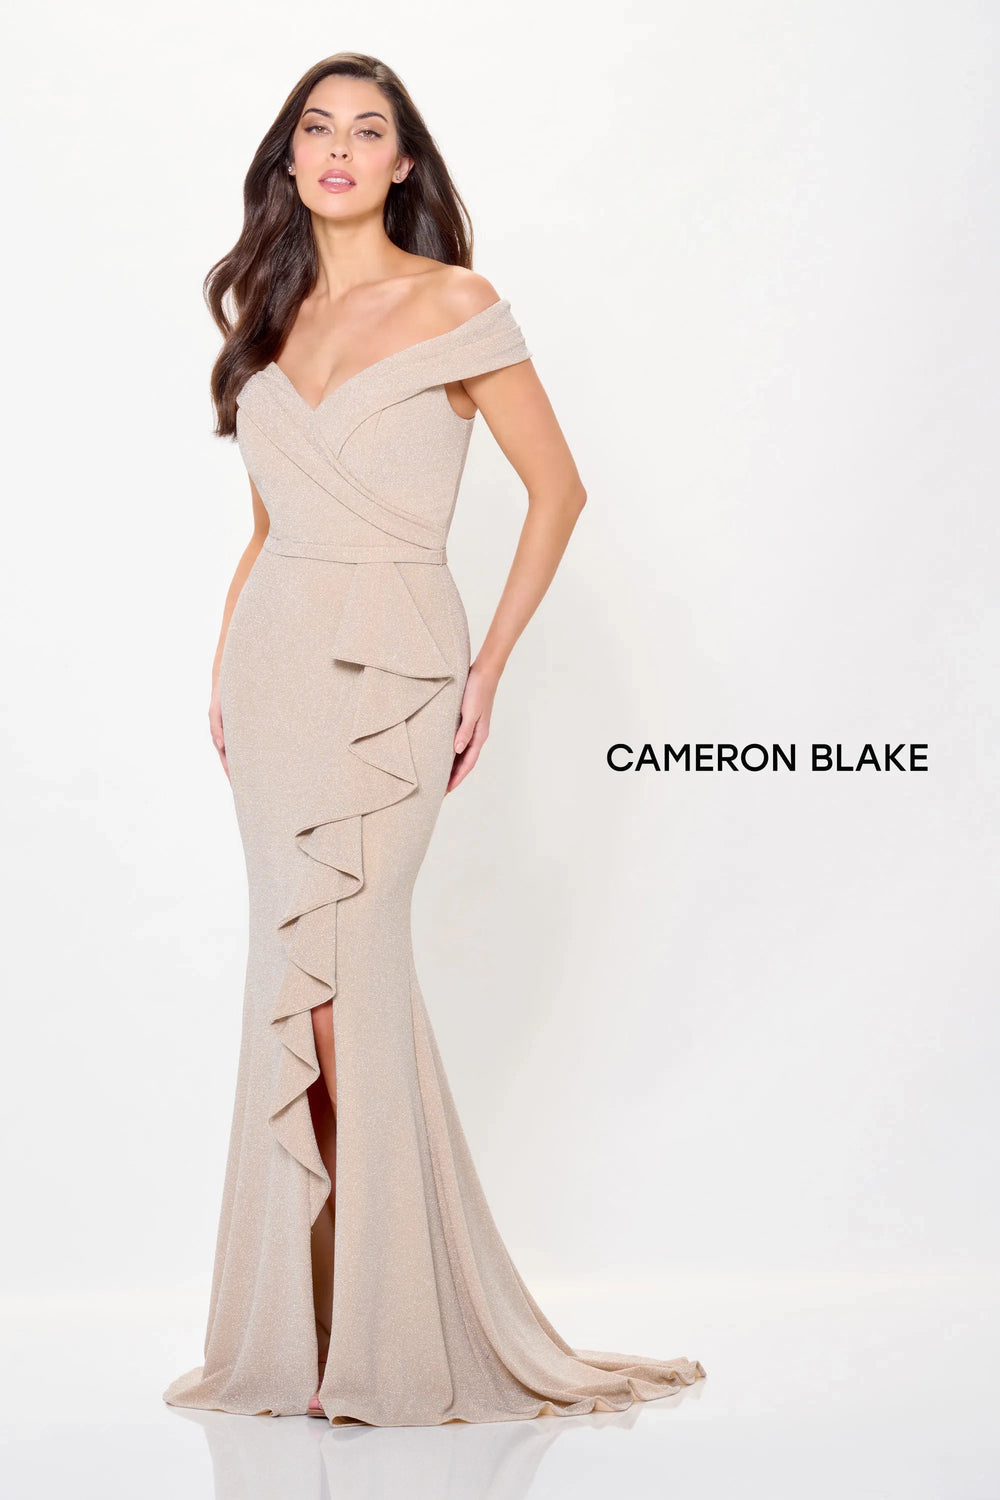 Mon Cheri Cameron Blake Dress Mon Cheri Cameron Blake CB3236 Dress